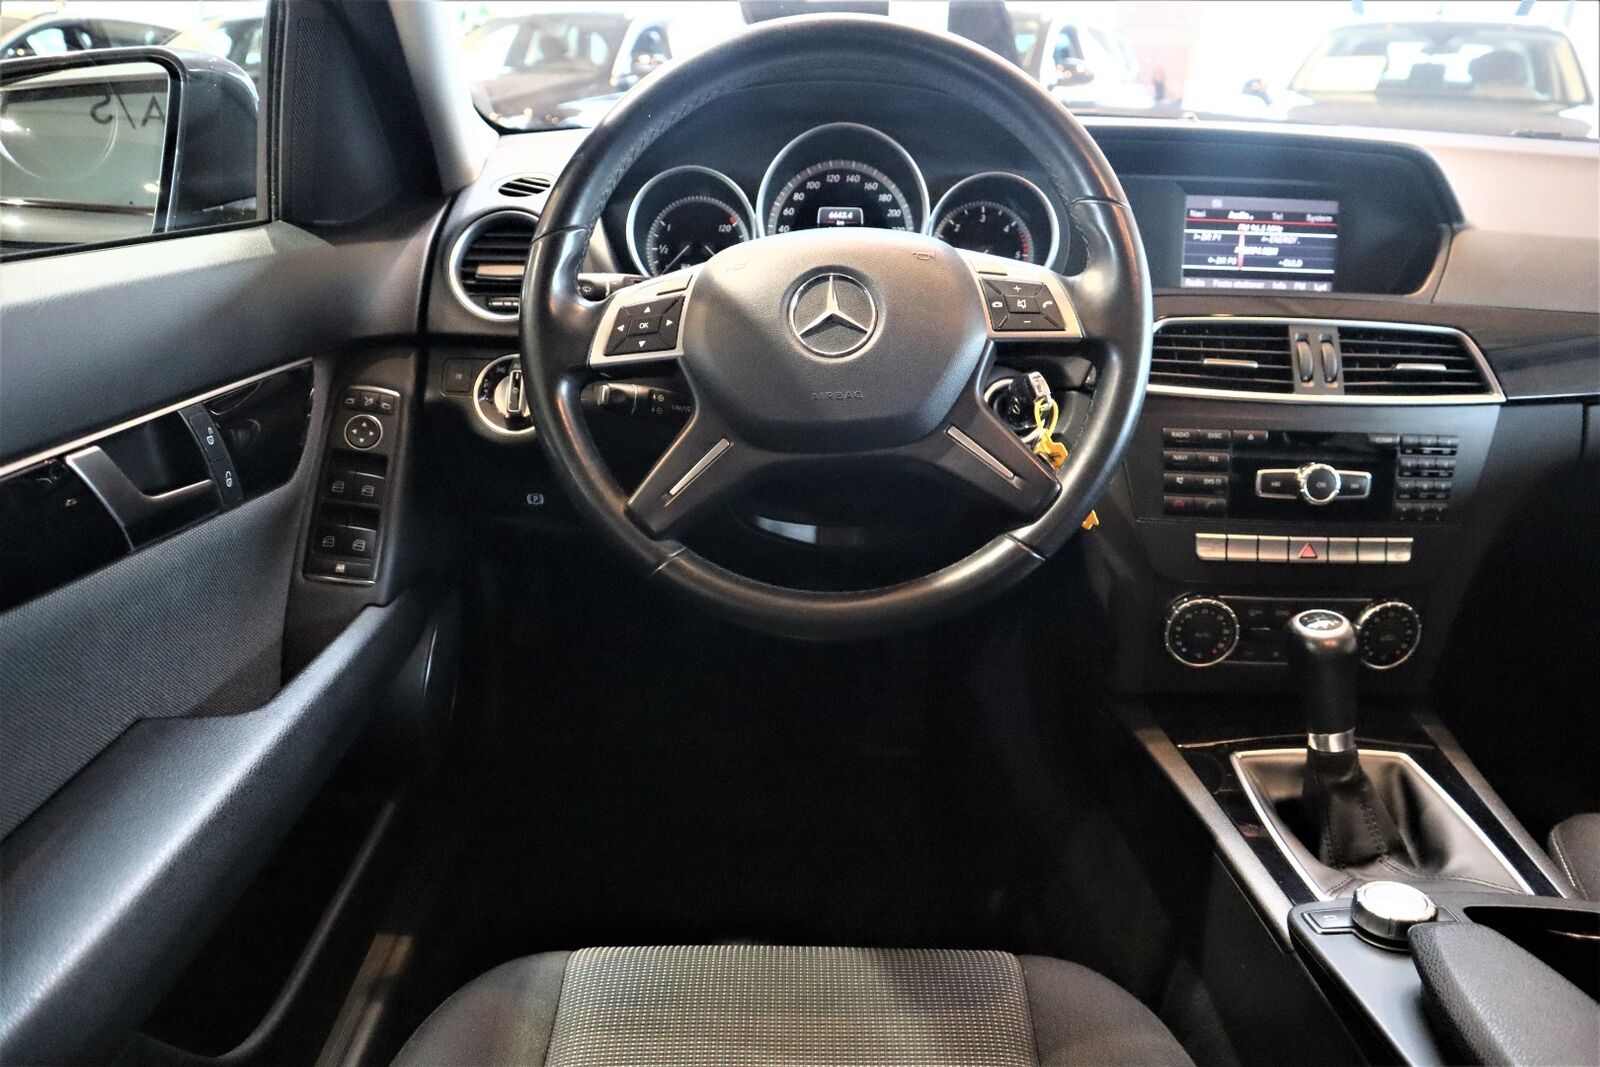 Billede af Mercedes C200 2,2 CDi stc. BE